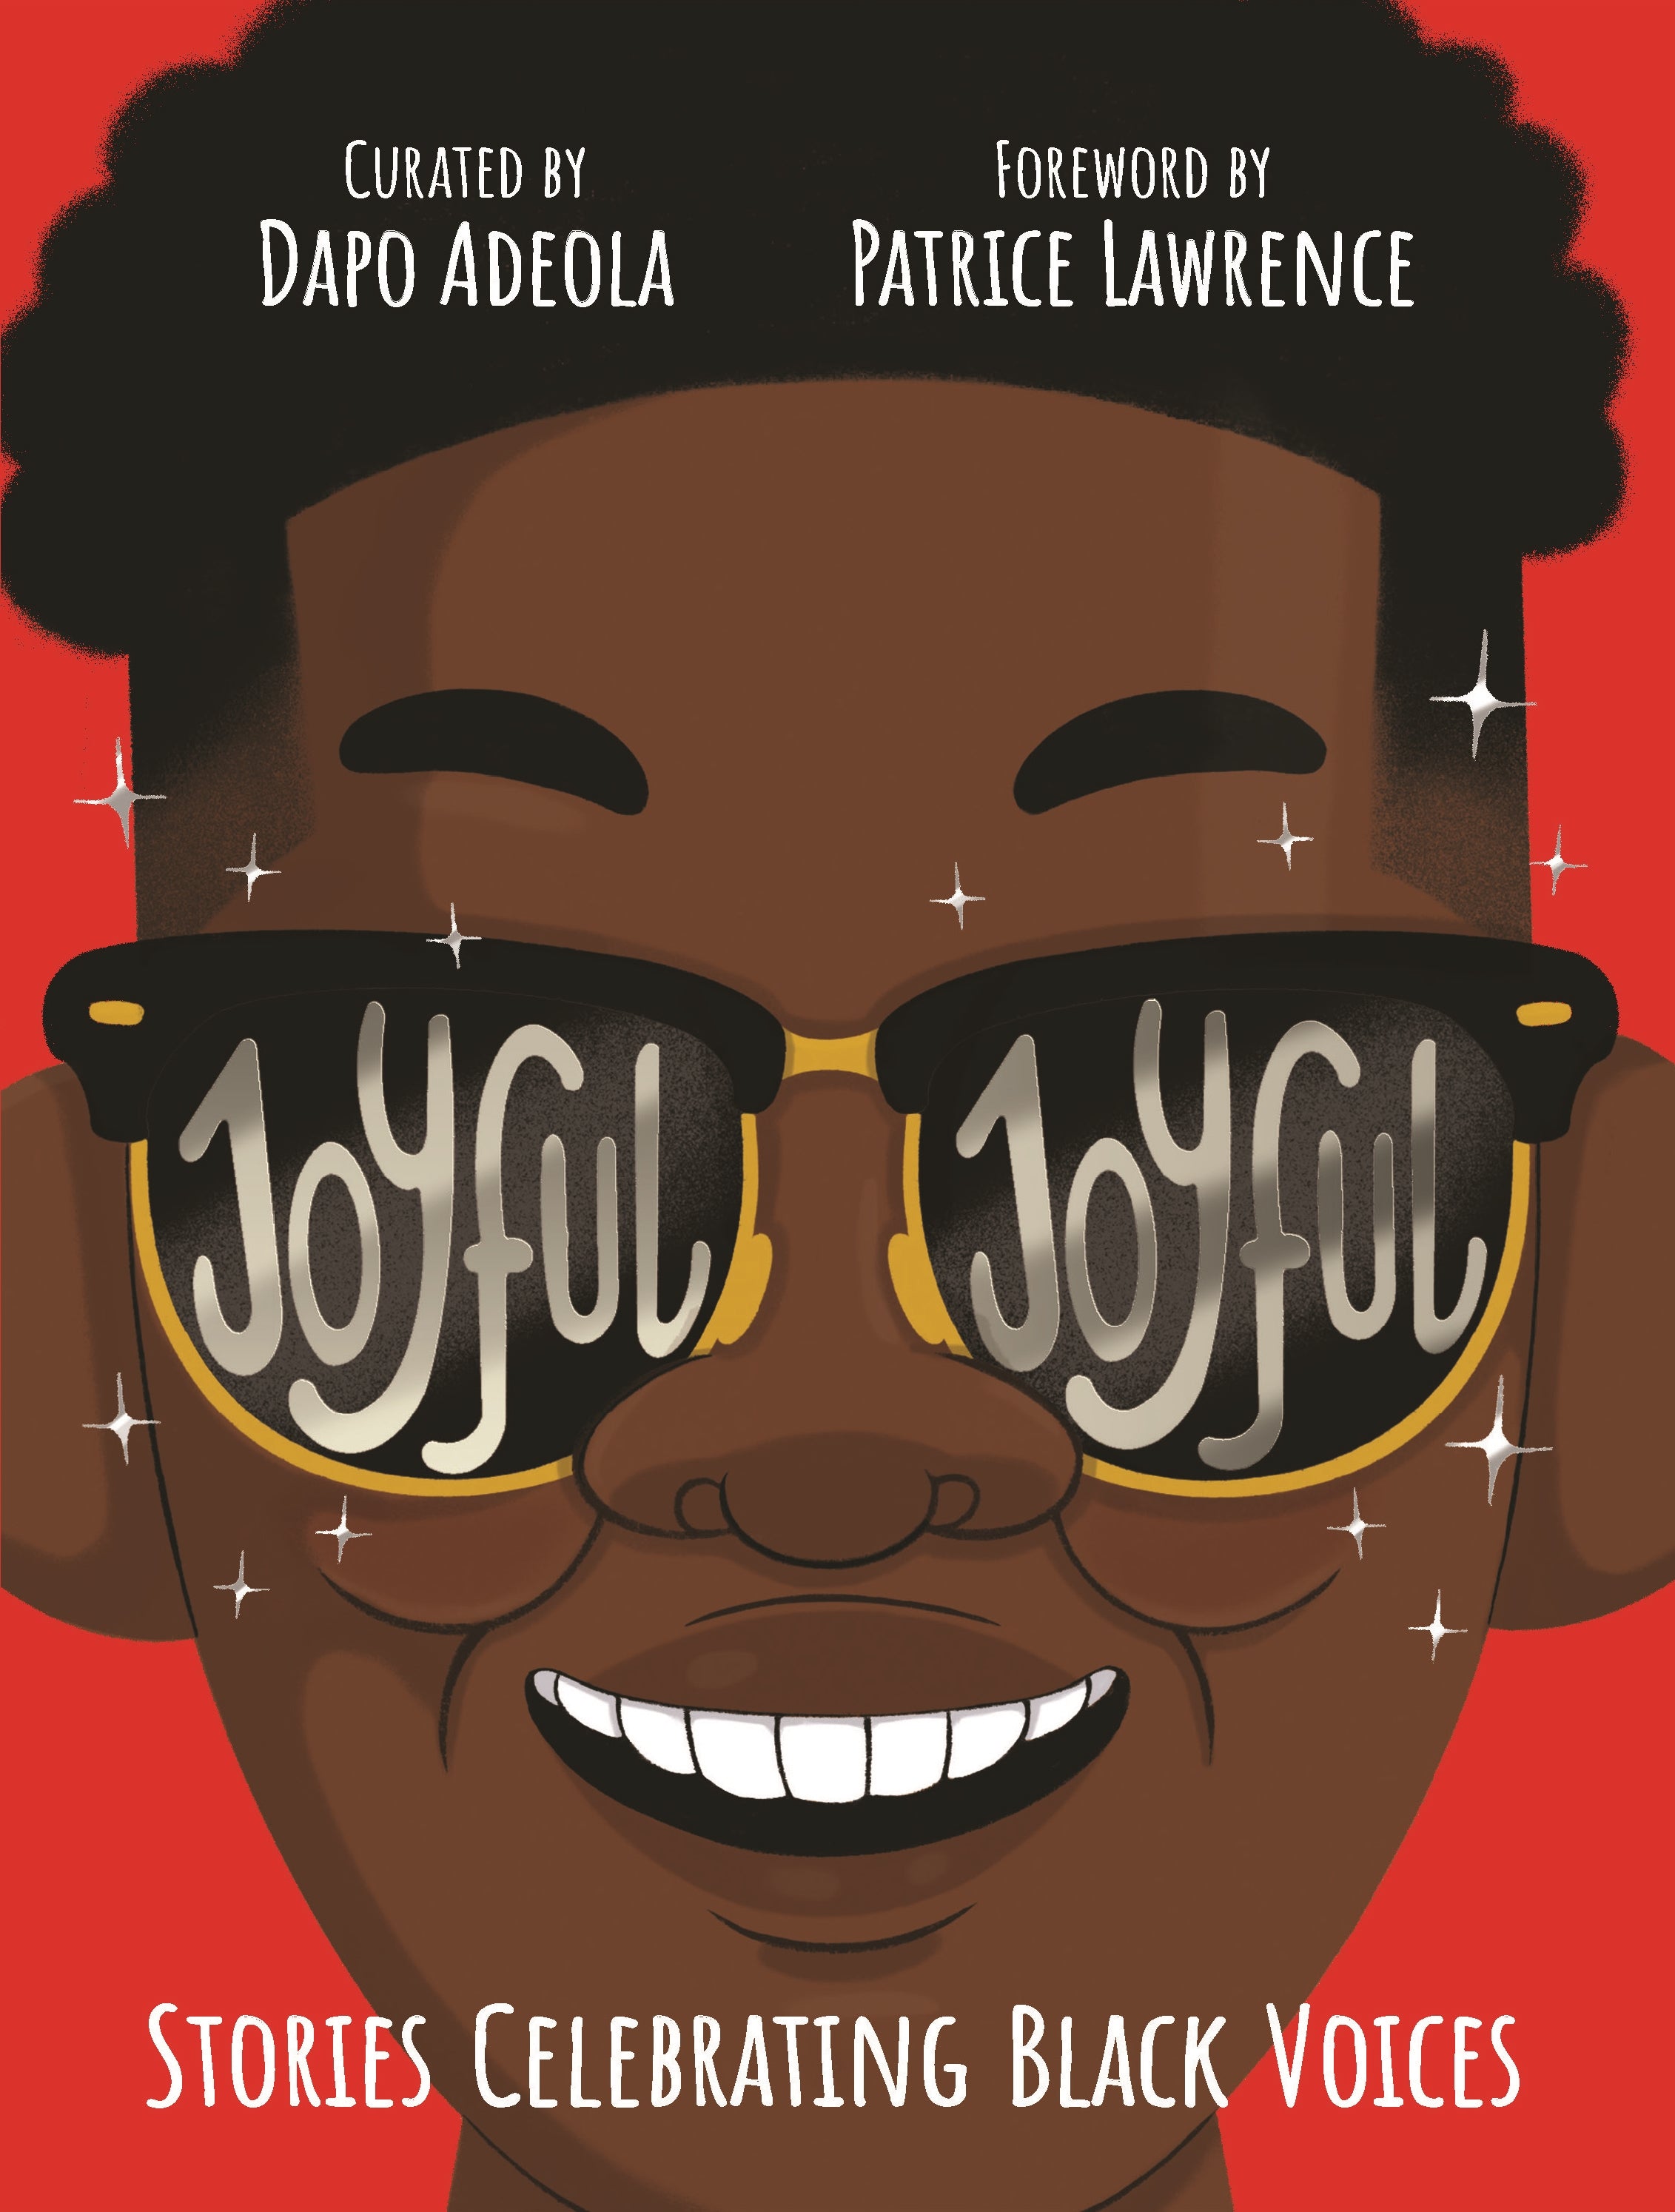 Joyful Joyful - Dapo Adeola 